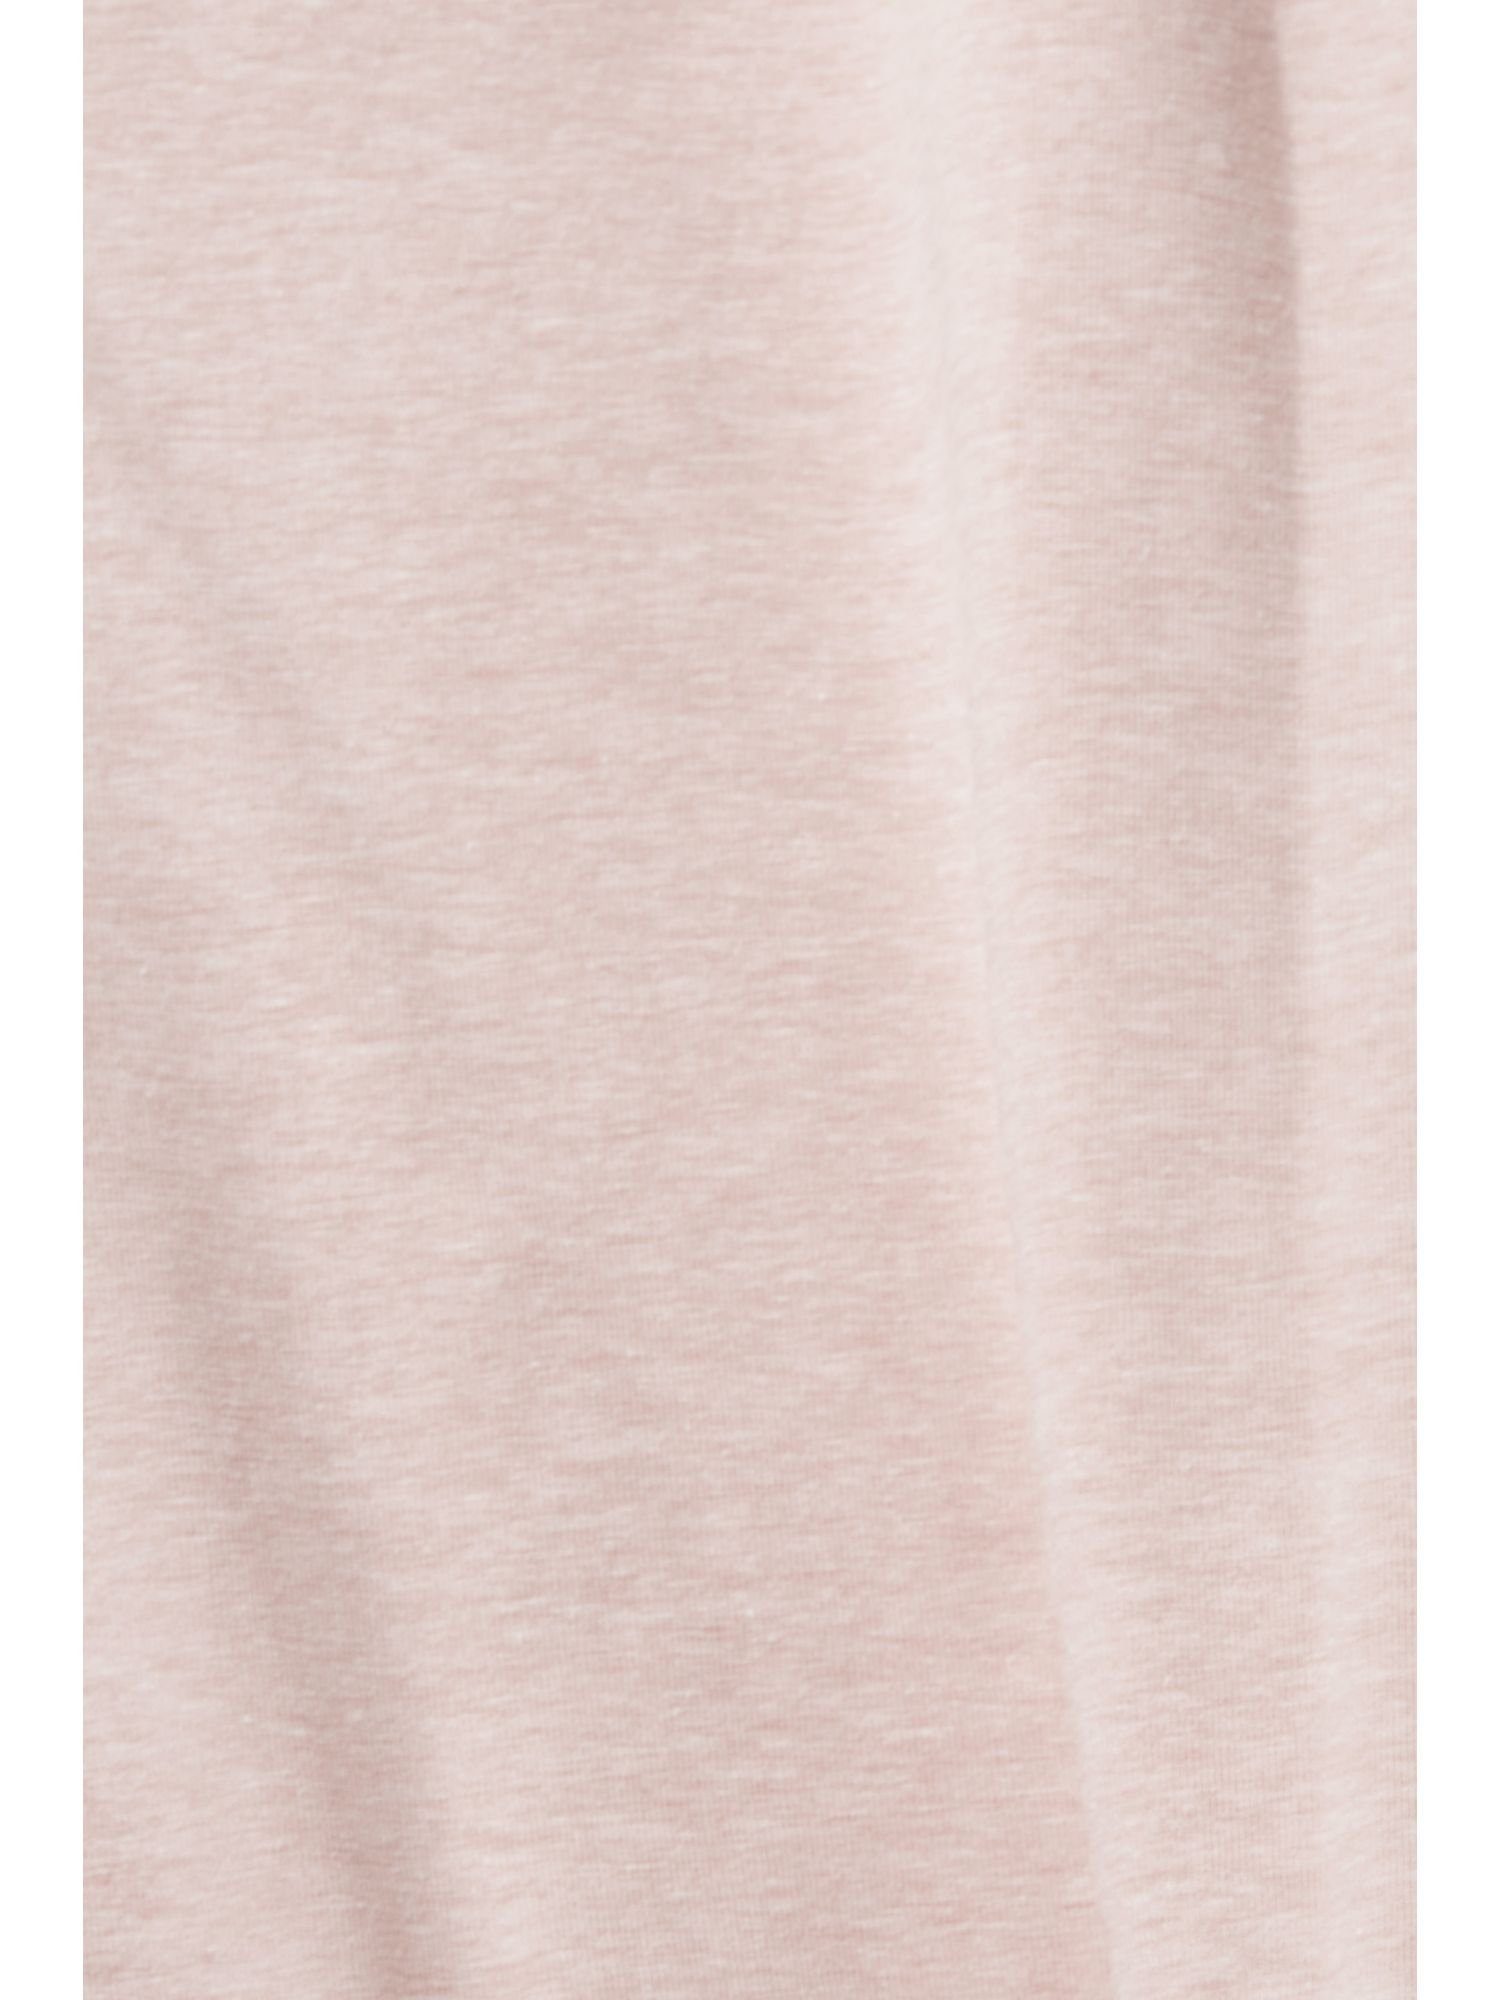 Esprit Pyjamaoberteil T-Shirt Brusttasche OLD Baumwoll-Mix aus mit PINK